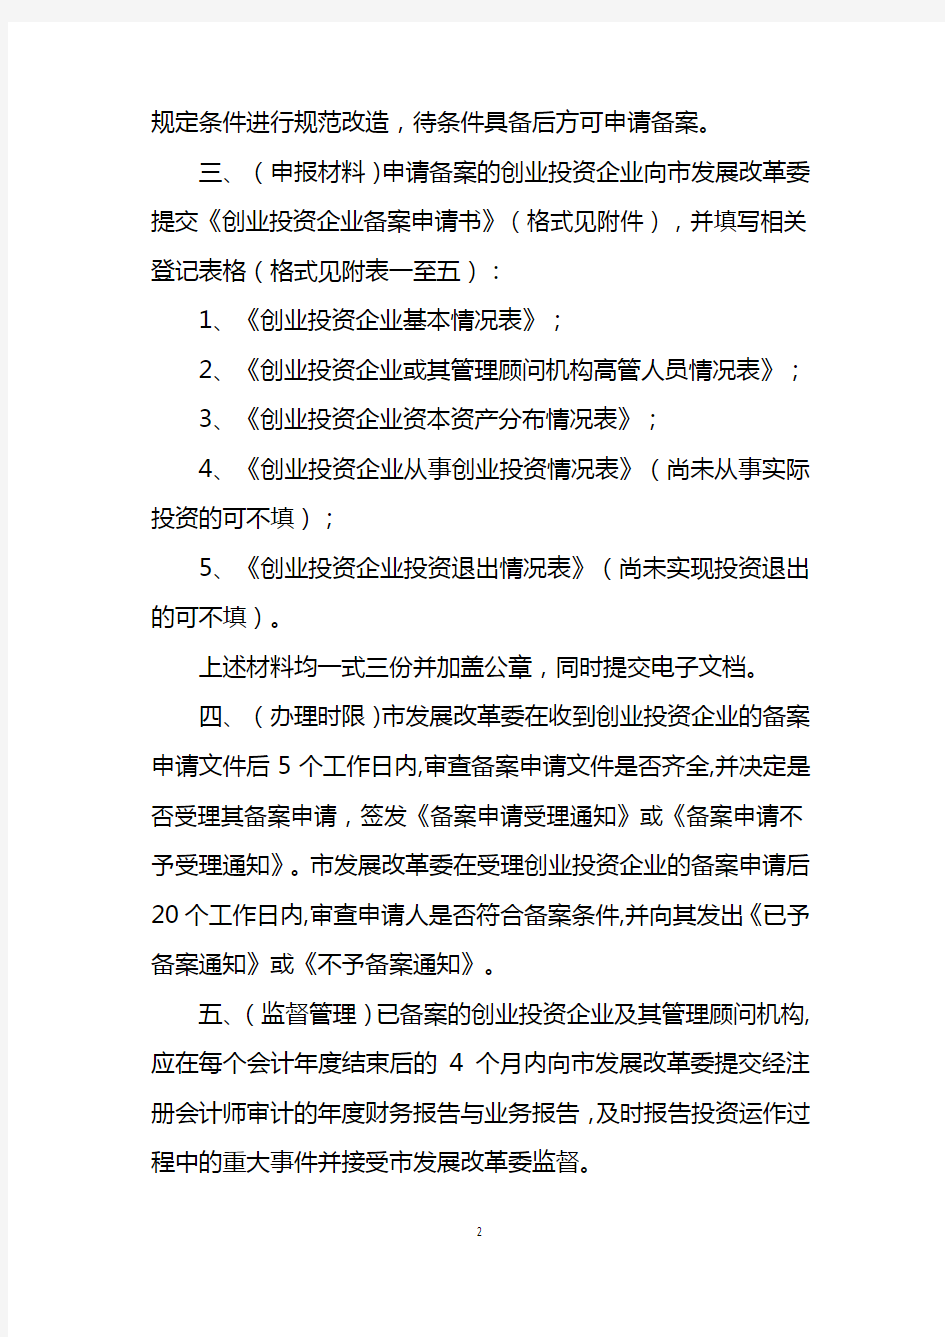 上海市创业投资企业备案管理操作暂行办法.docx